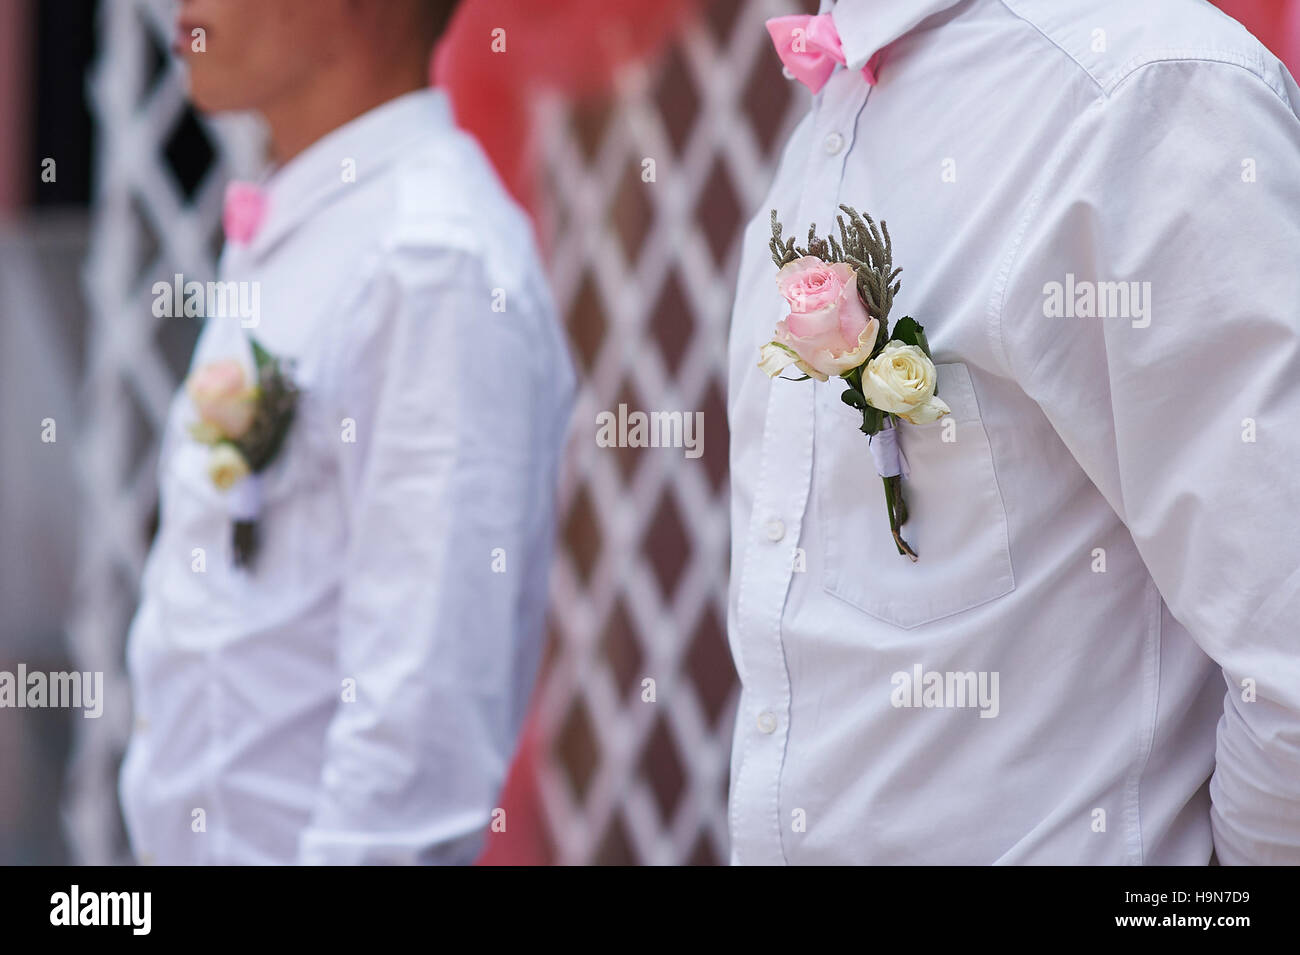 Freunde des Bräutigams bei der Hochzeitszeremonie mit Knopfloch auf dem shirt Stockfoto